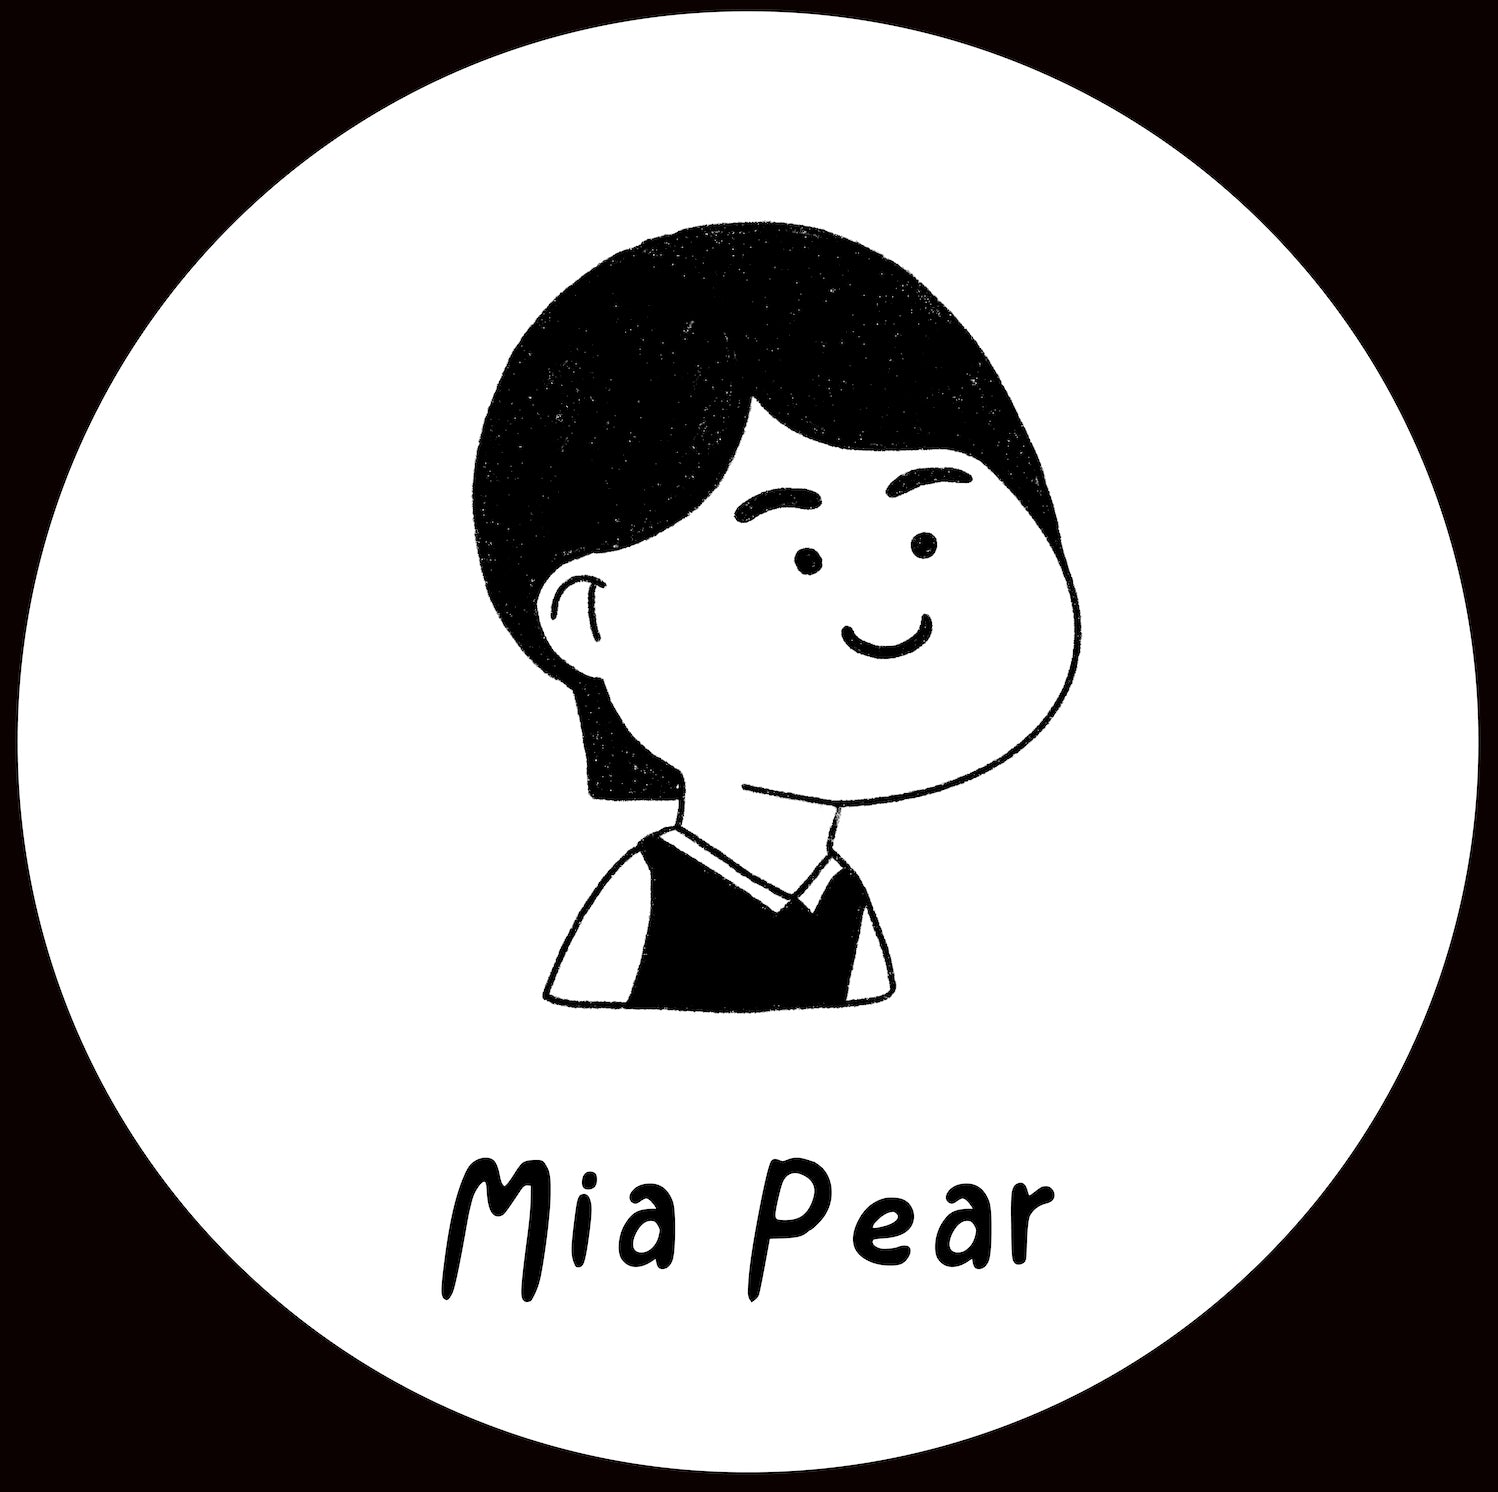 Mia Pear